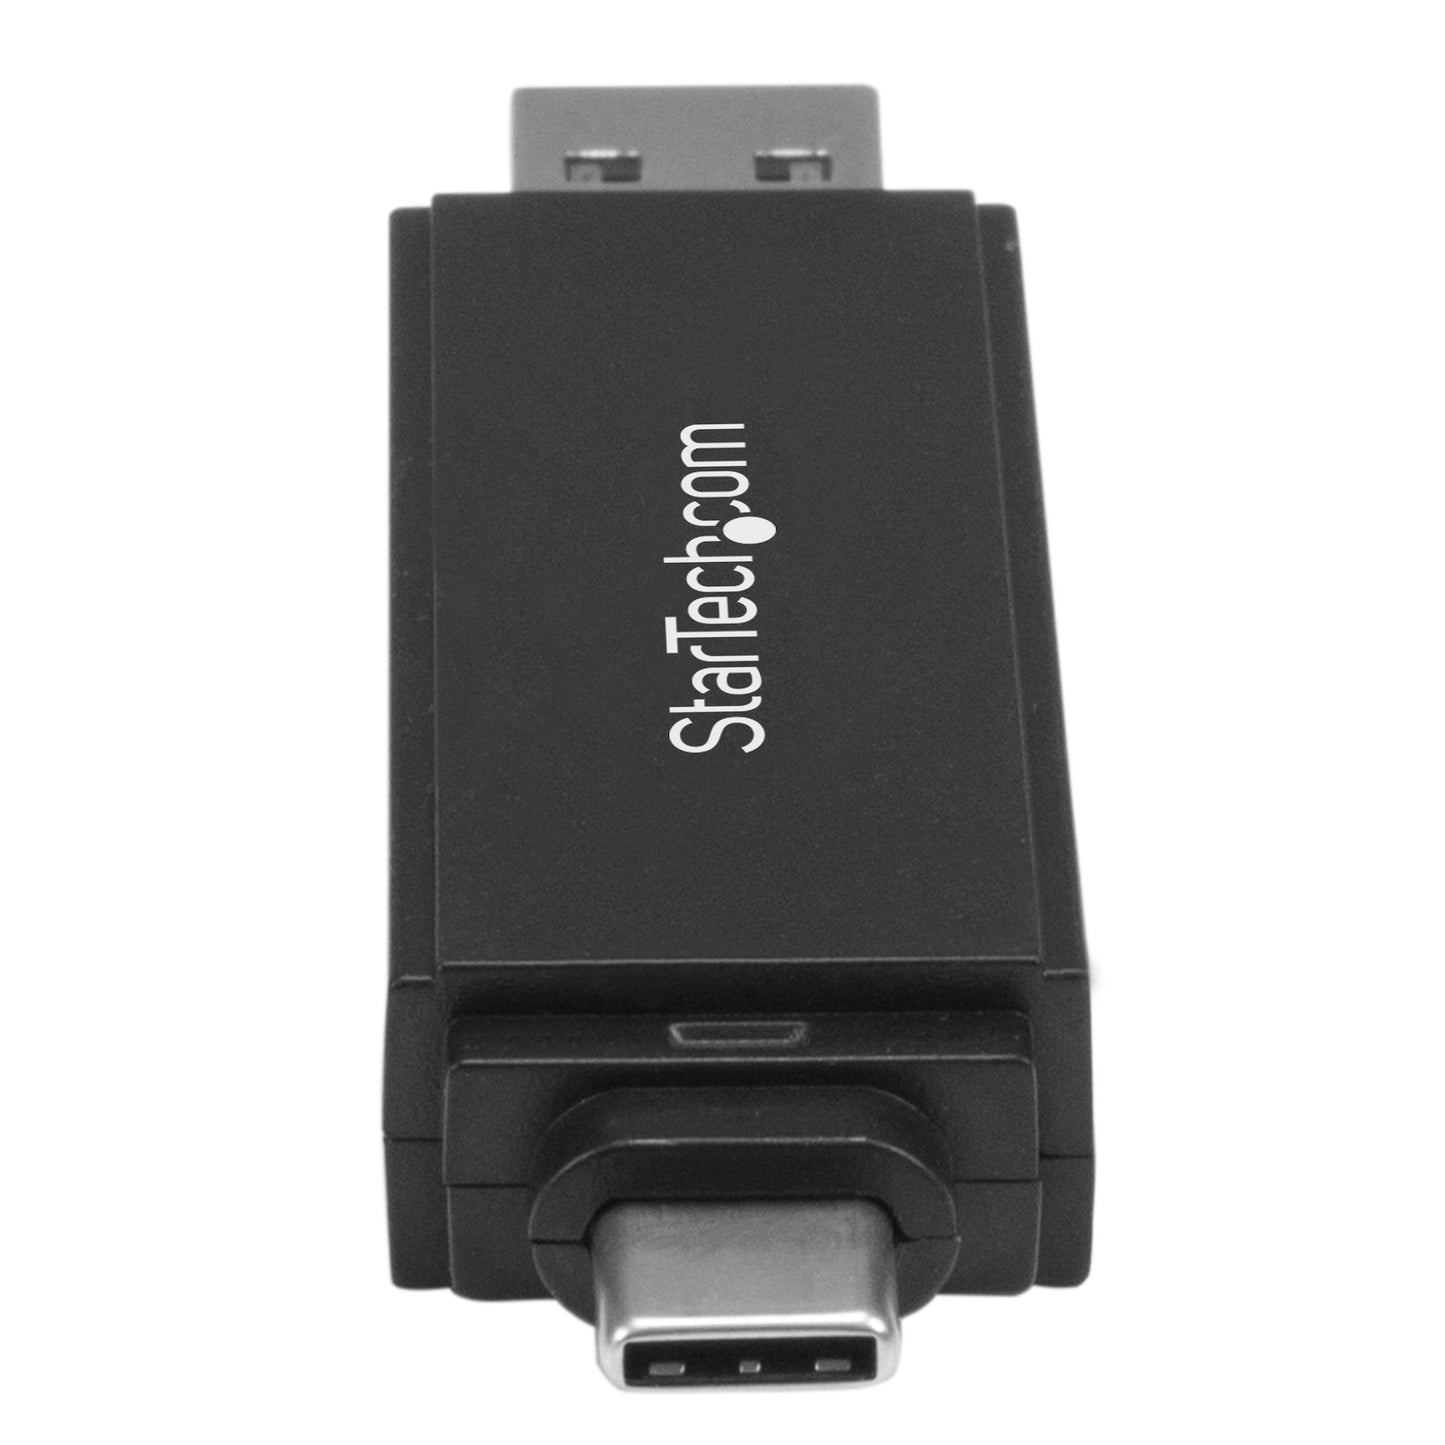 STARTECH CONSIG LECTOR USB 3.0 USB-C TIPO C Y UEXT SB-A DE TARJETAS SD MICRO SD